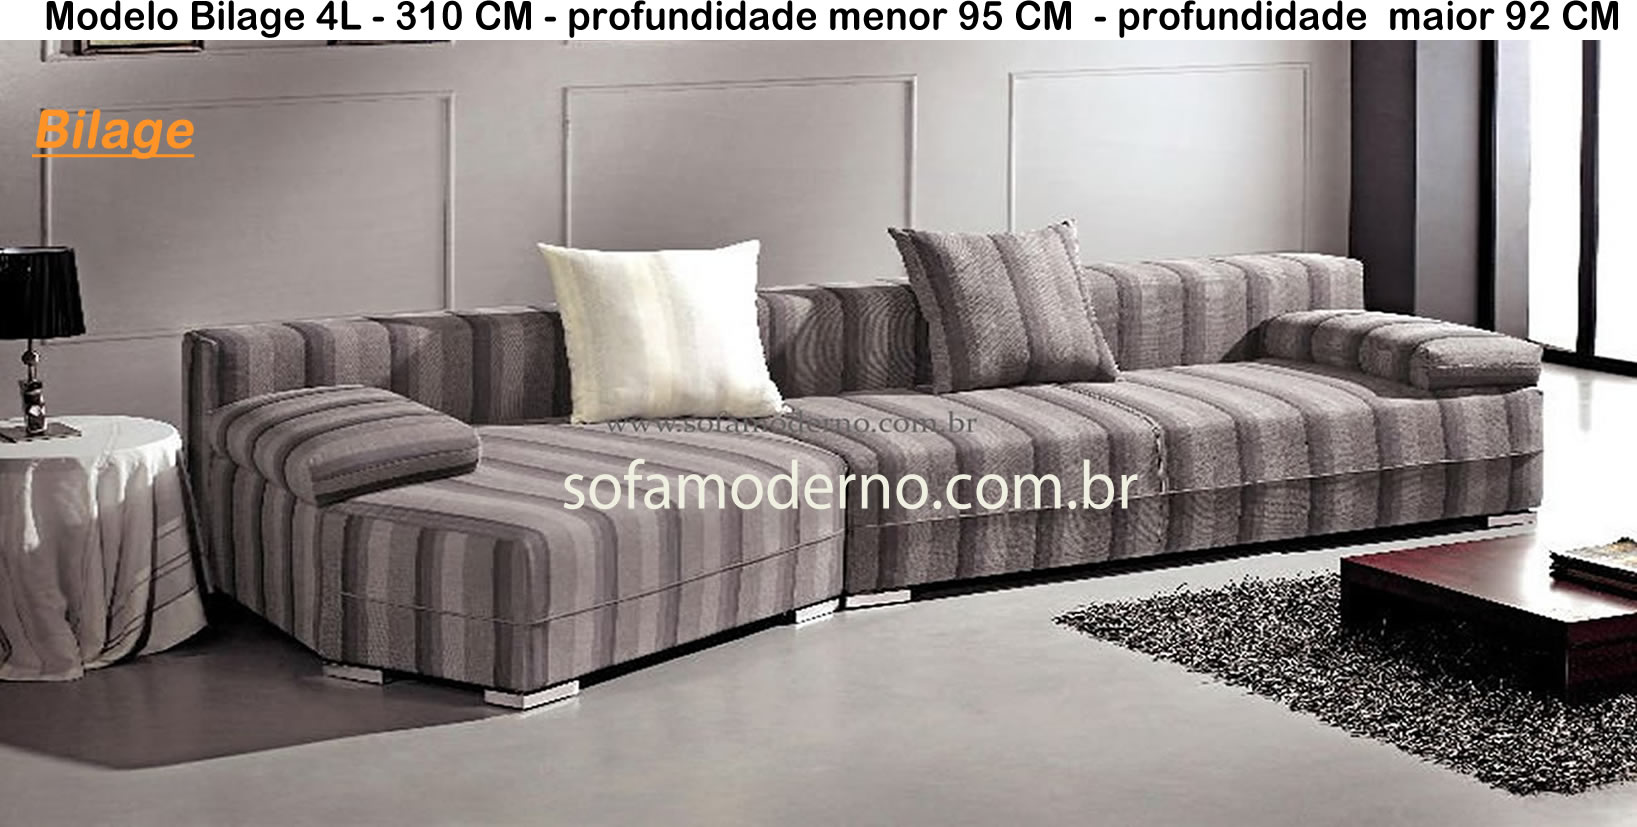 sofa 4l